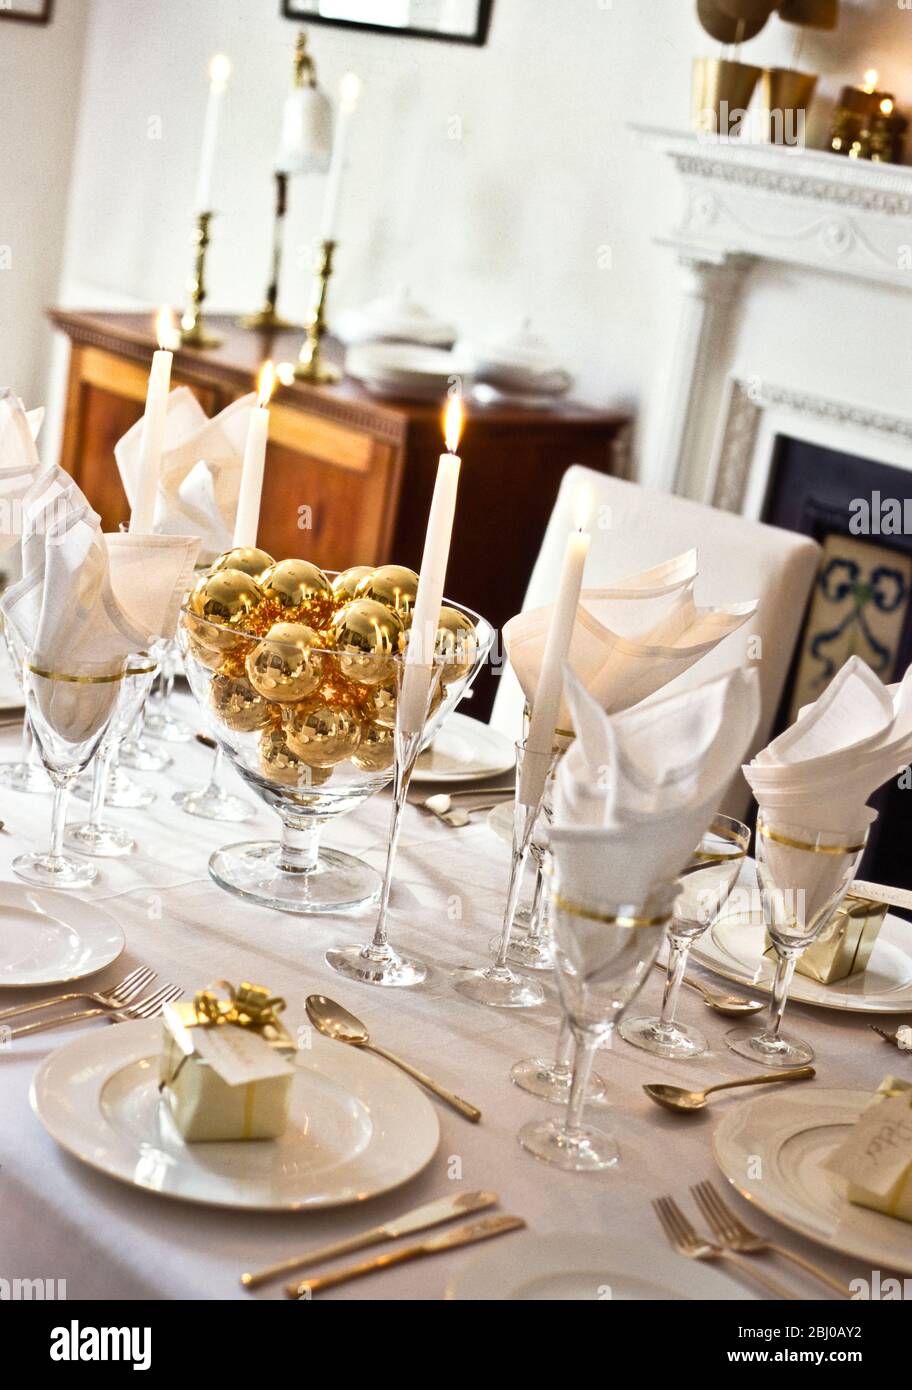 Tisch für Weihnachten oder einen besonderen Anlass wie eine goldene Hochzeit Partei in eleganten weißen Speisesaal gelegt - Stockfoto